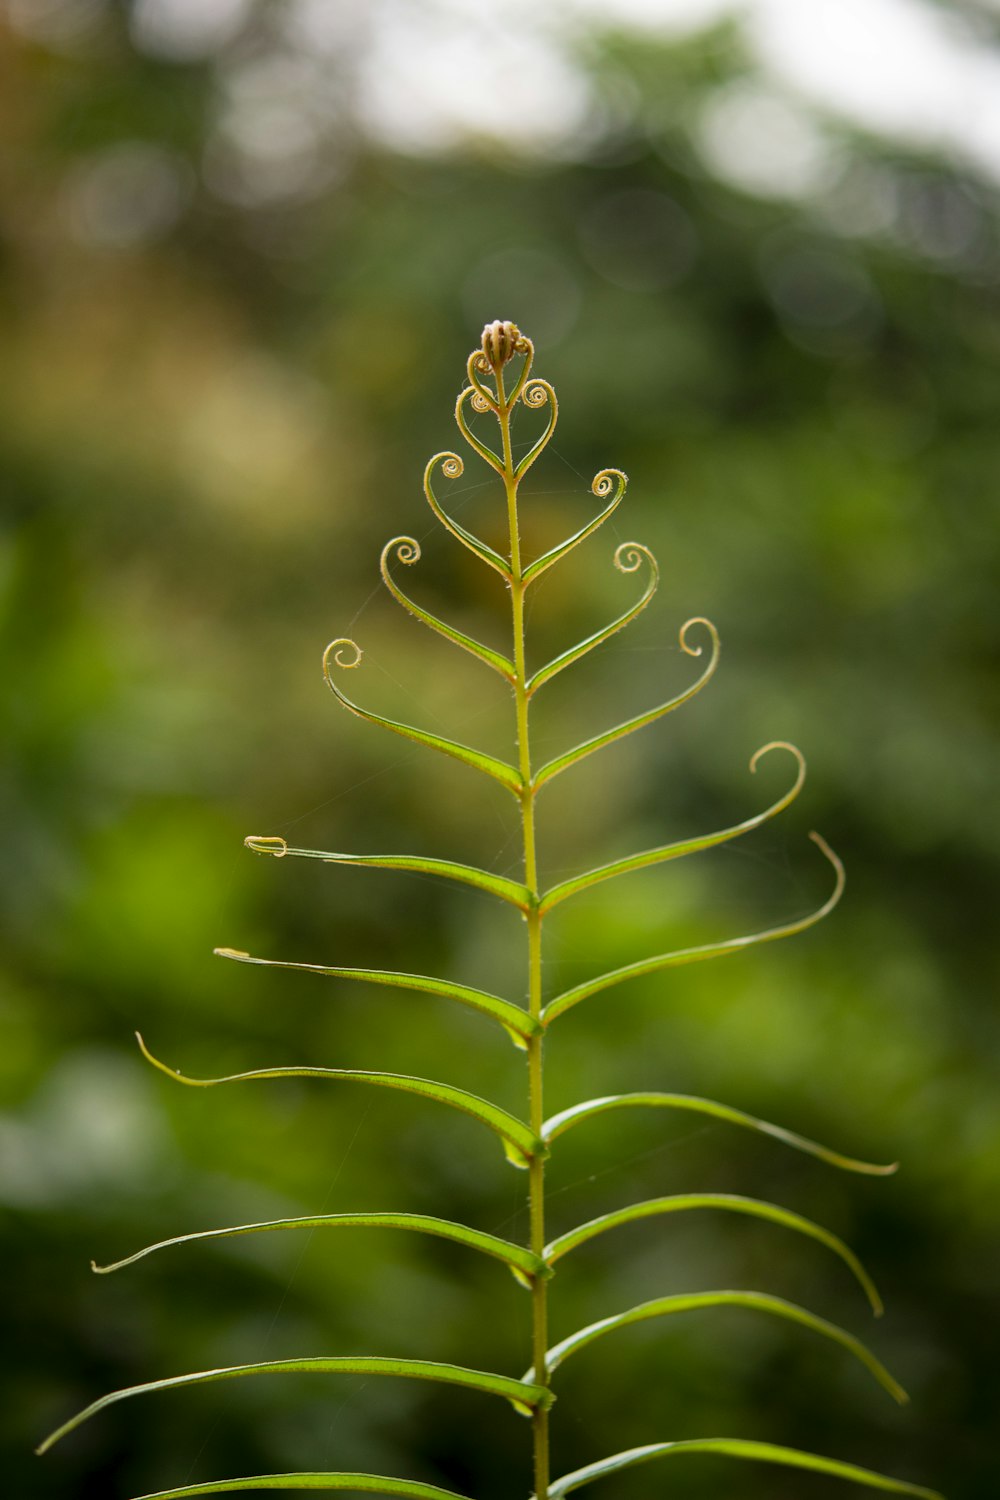 green plant in tilt shift lens